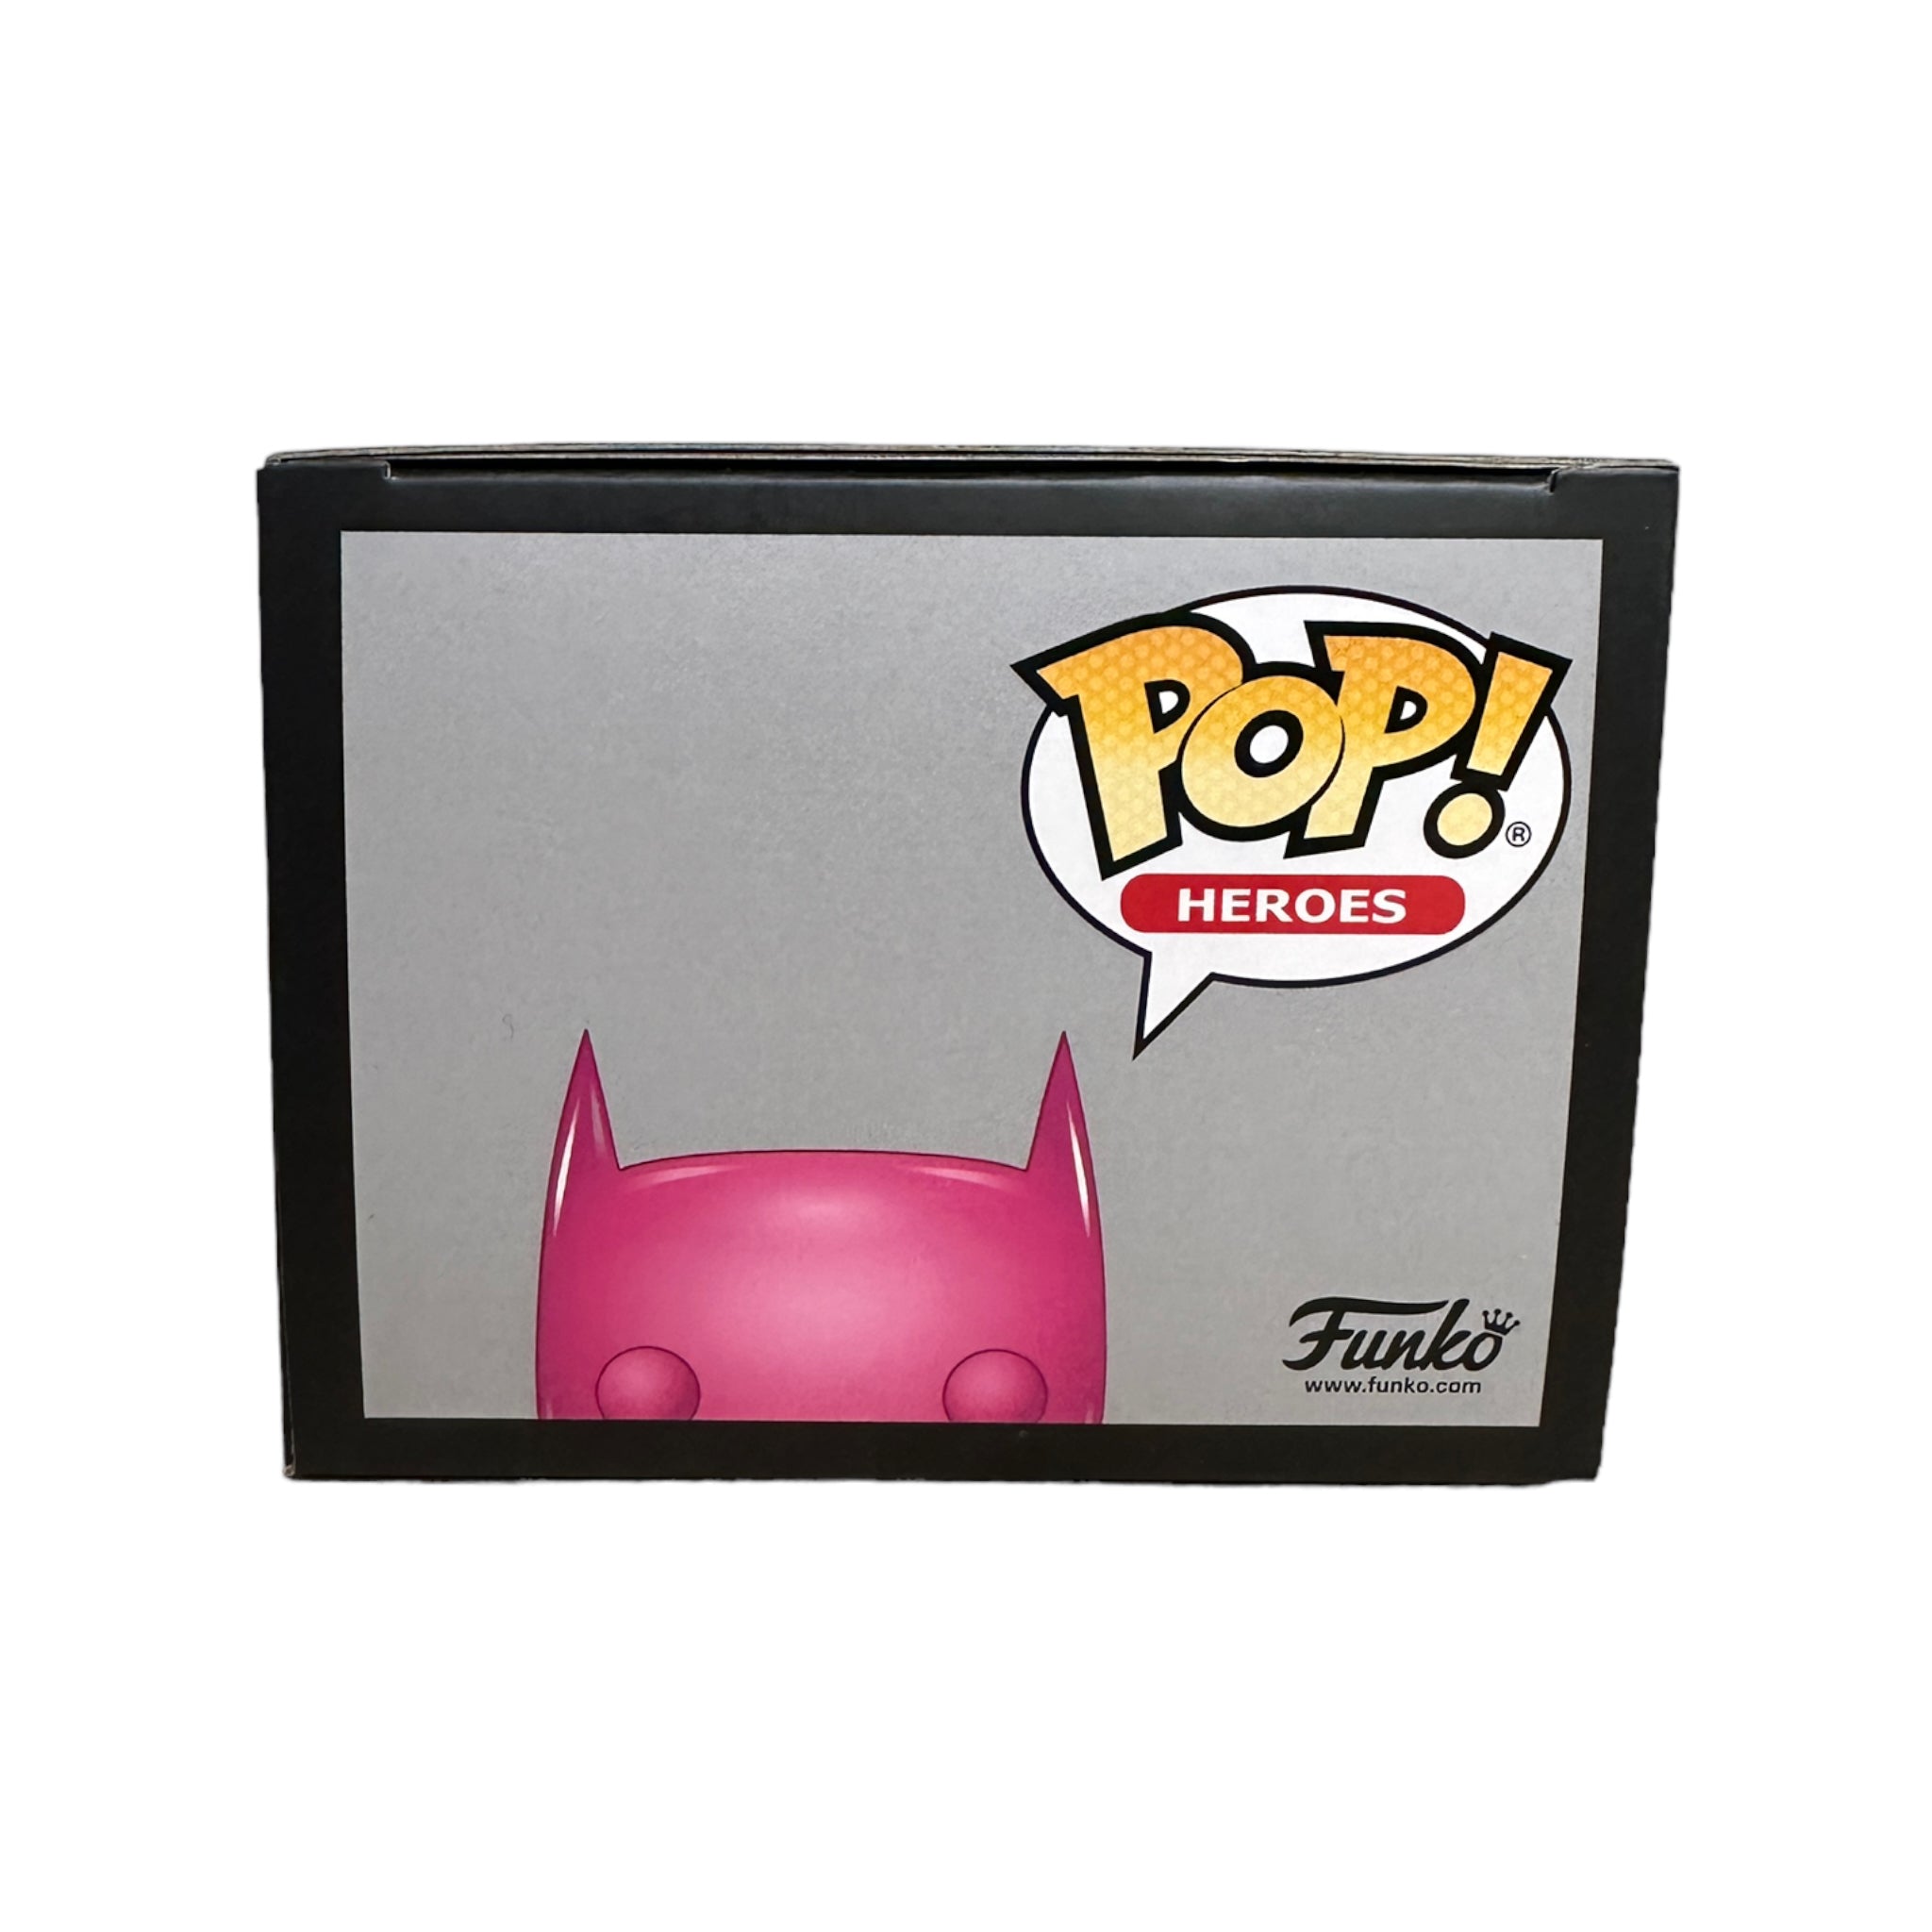 Batman #144 (Pink Chrome) Funko Pop! - DC Super Heroes - NYCC 2019 Exclusive LE1500 Pcs - Condition 9/10